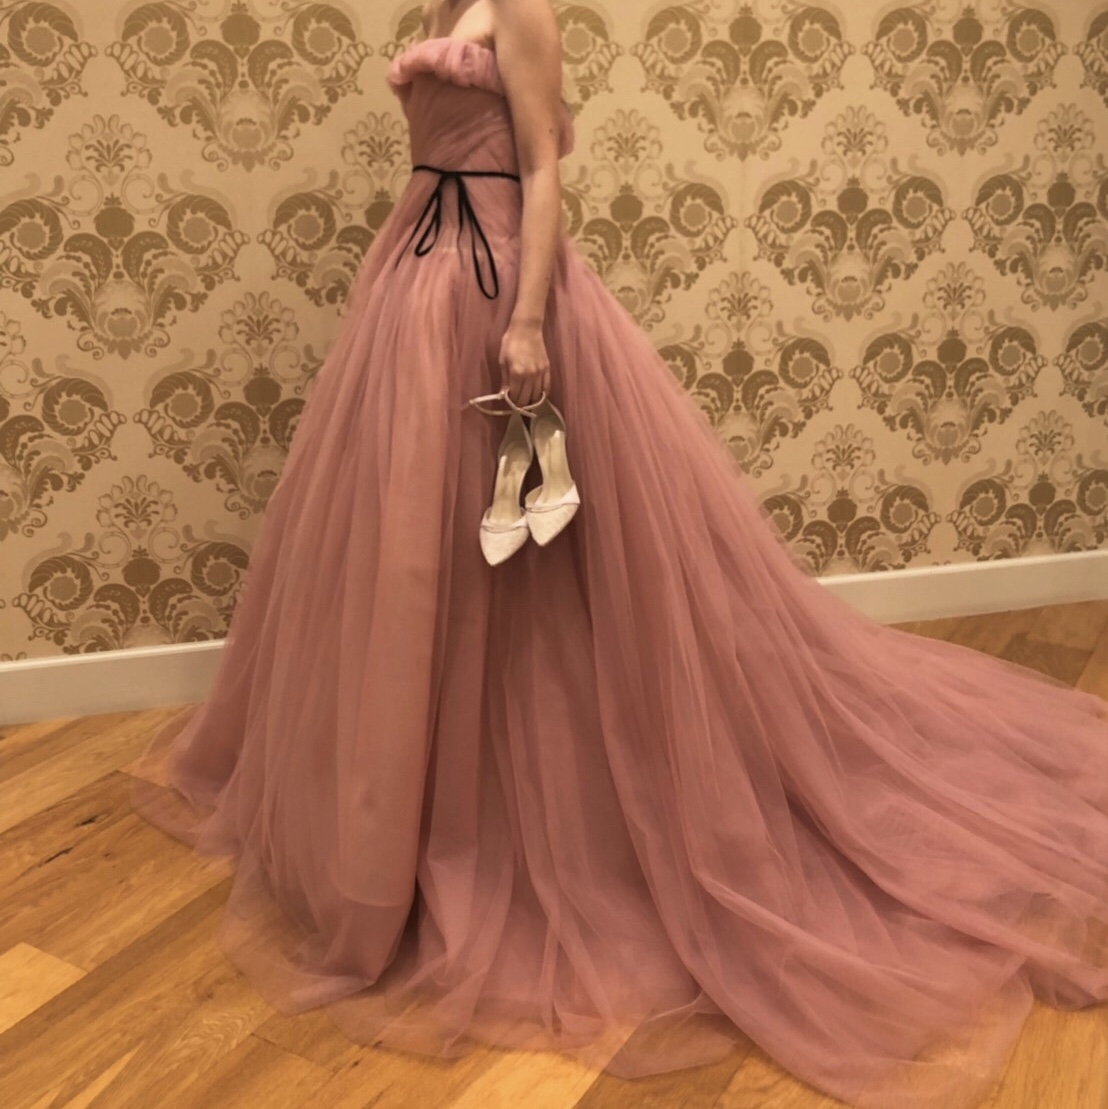 ザ・ルイガンズの披露宴会場でロマンティックにお召いただけるモニーク・ルイリエのピンクの新作カラードレス